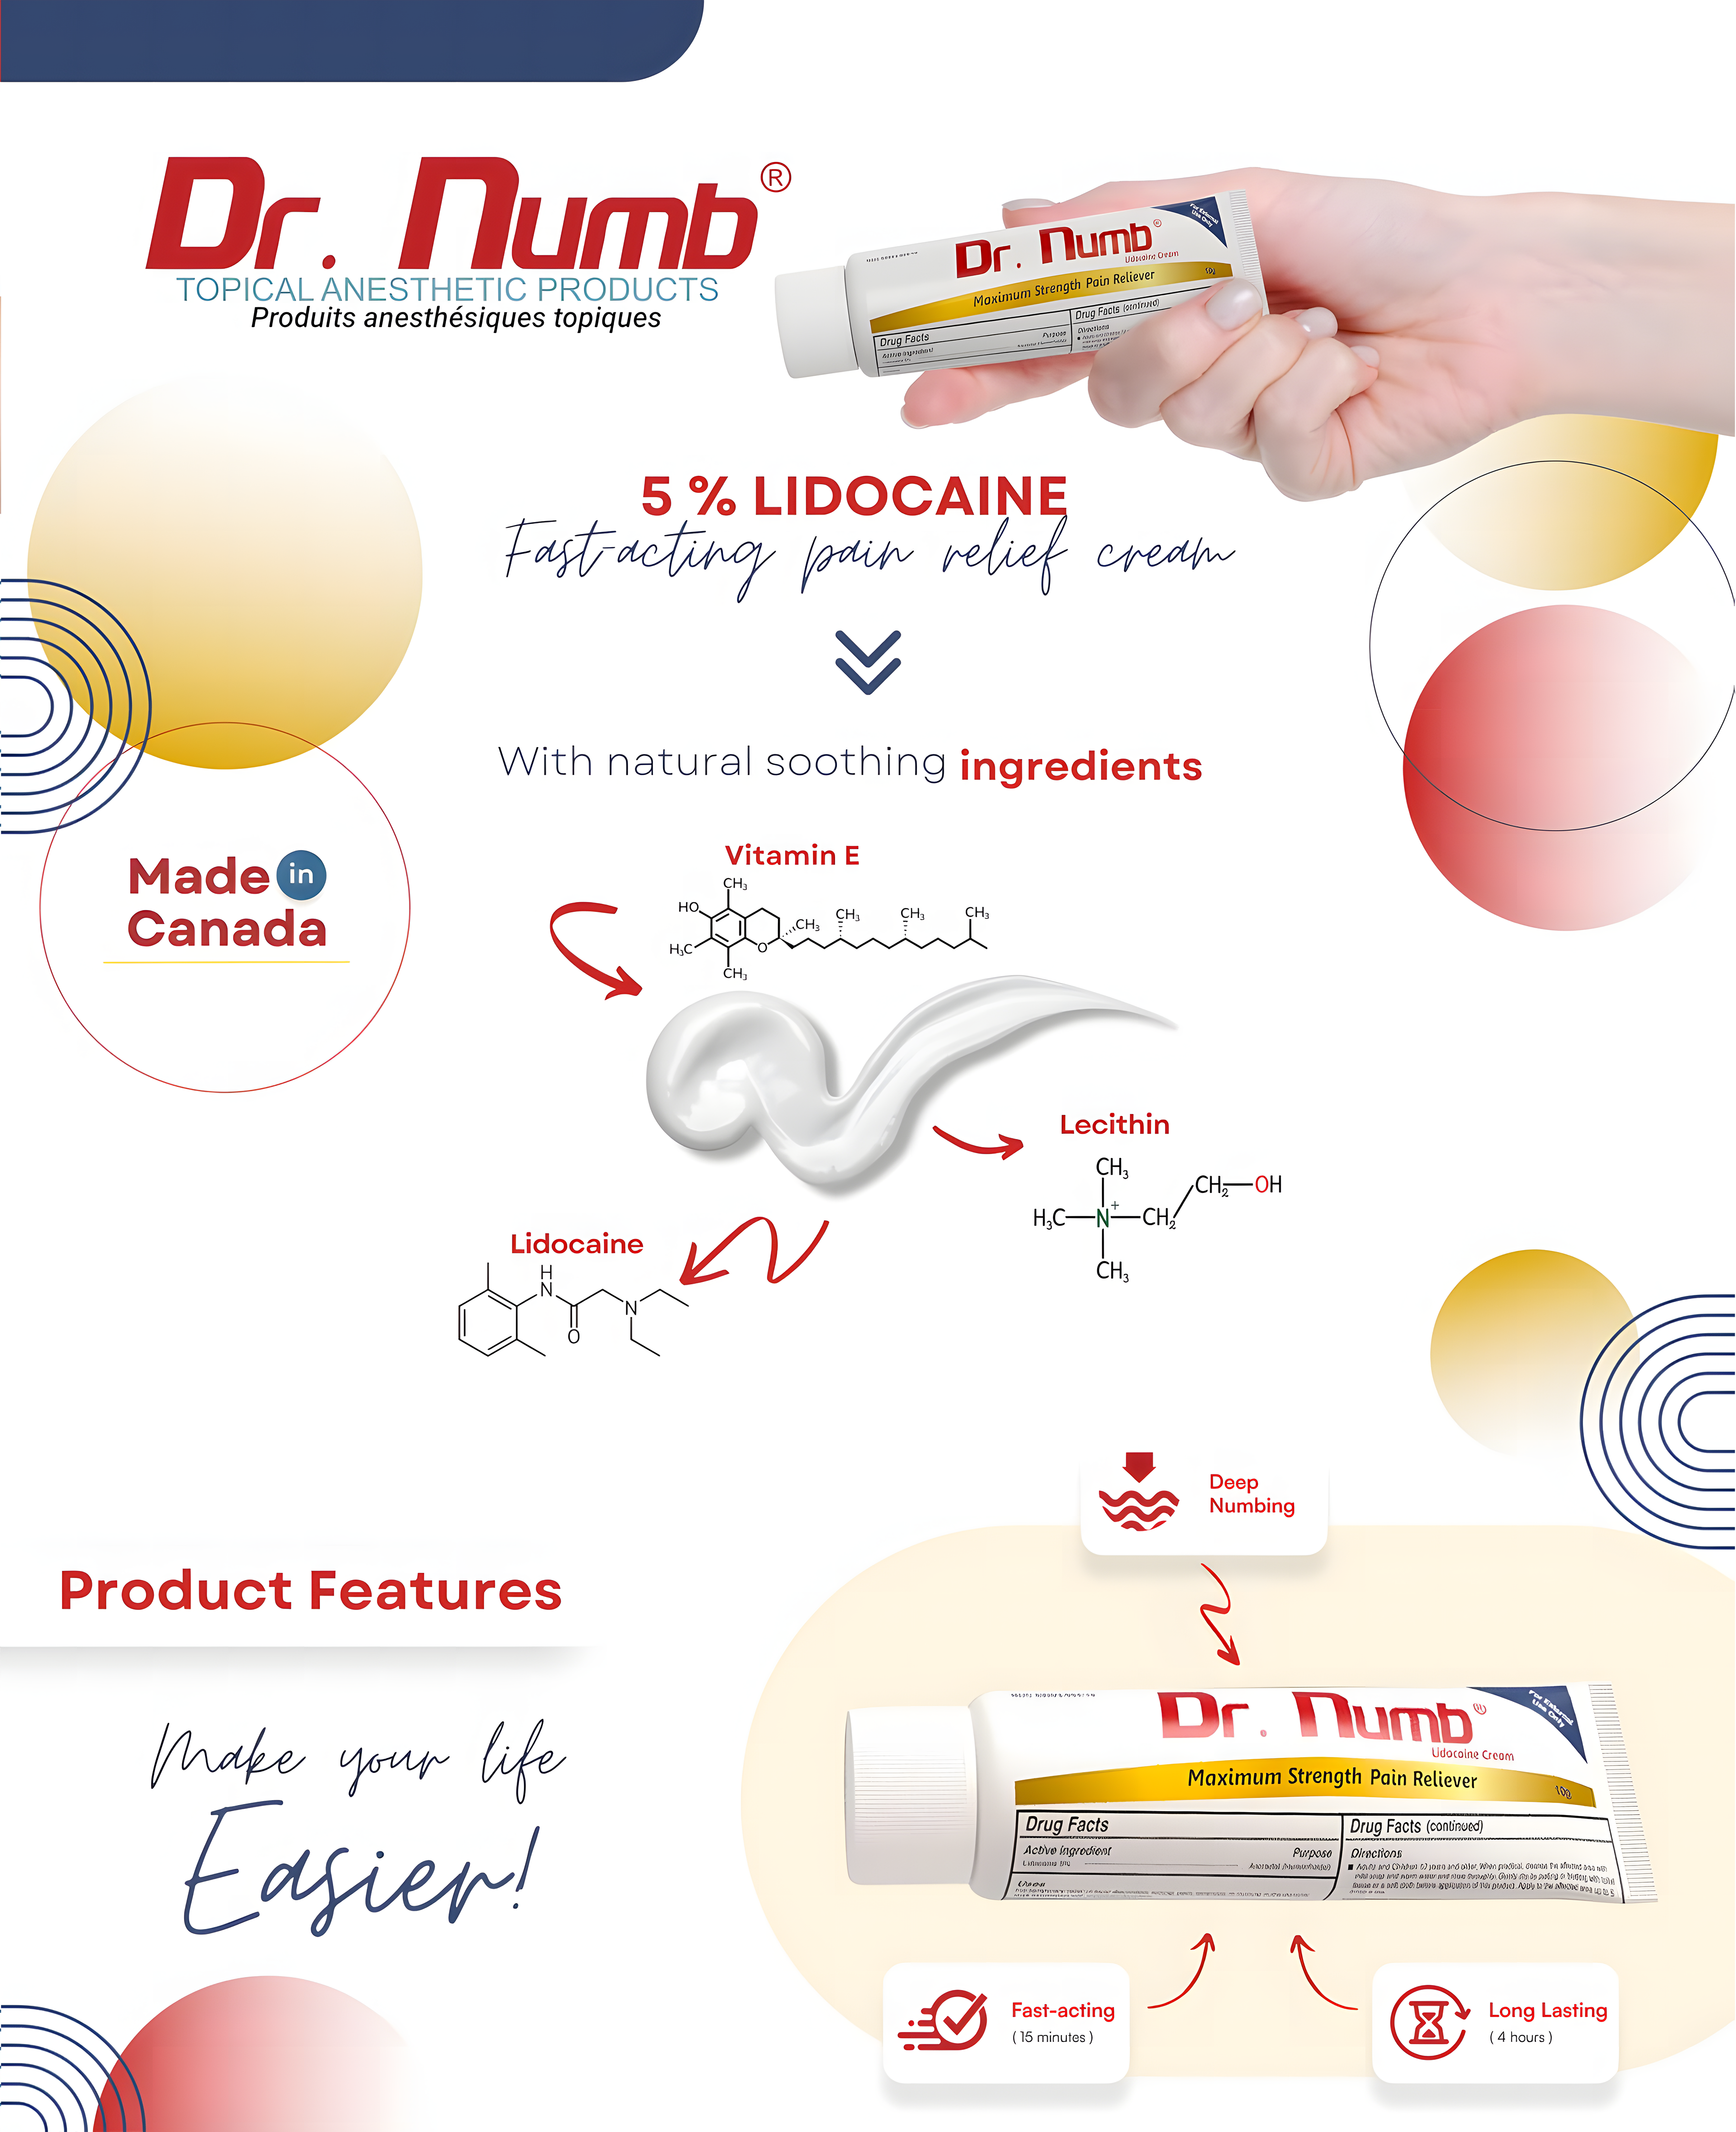 Dr Numb Product Details